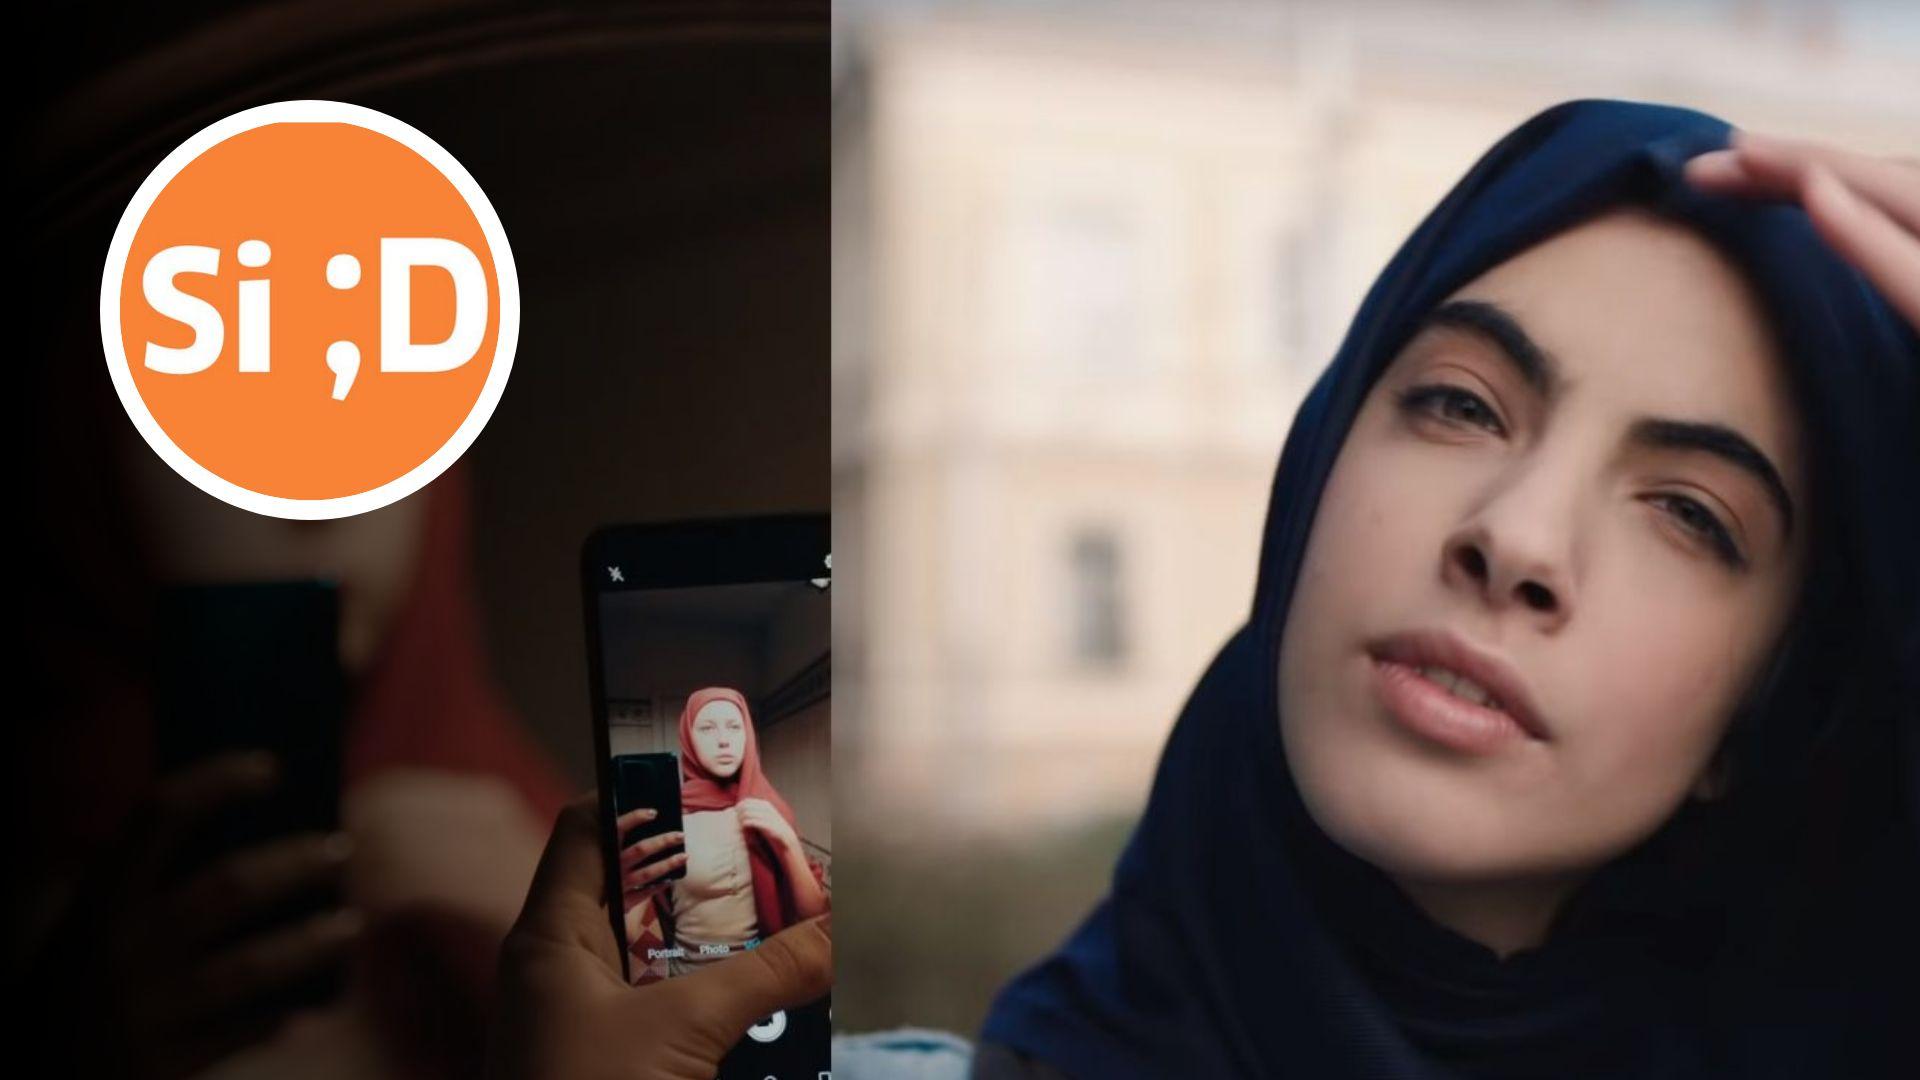 Reklamen viser at frihet ikke bare er å ta av seg hijaben, men og også ta den på